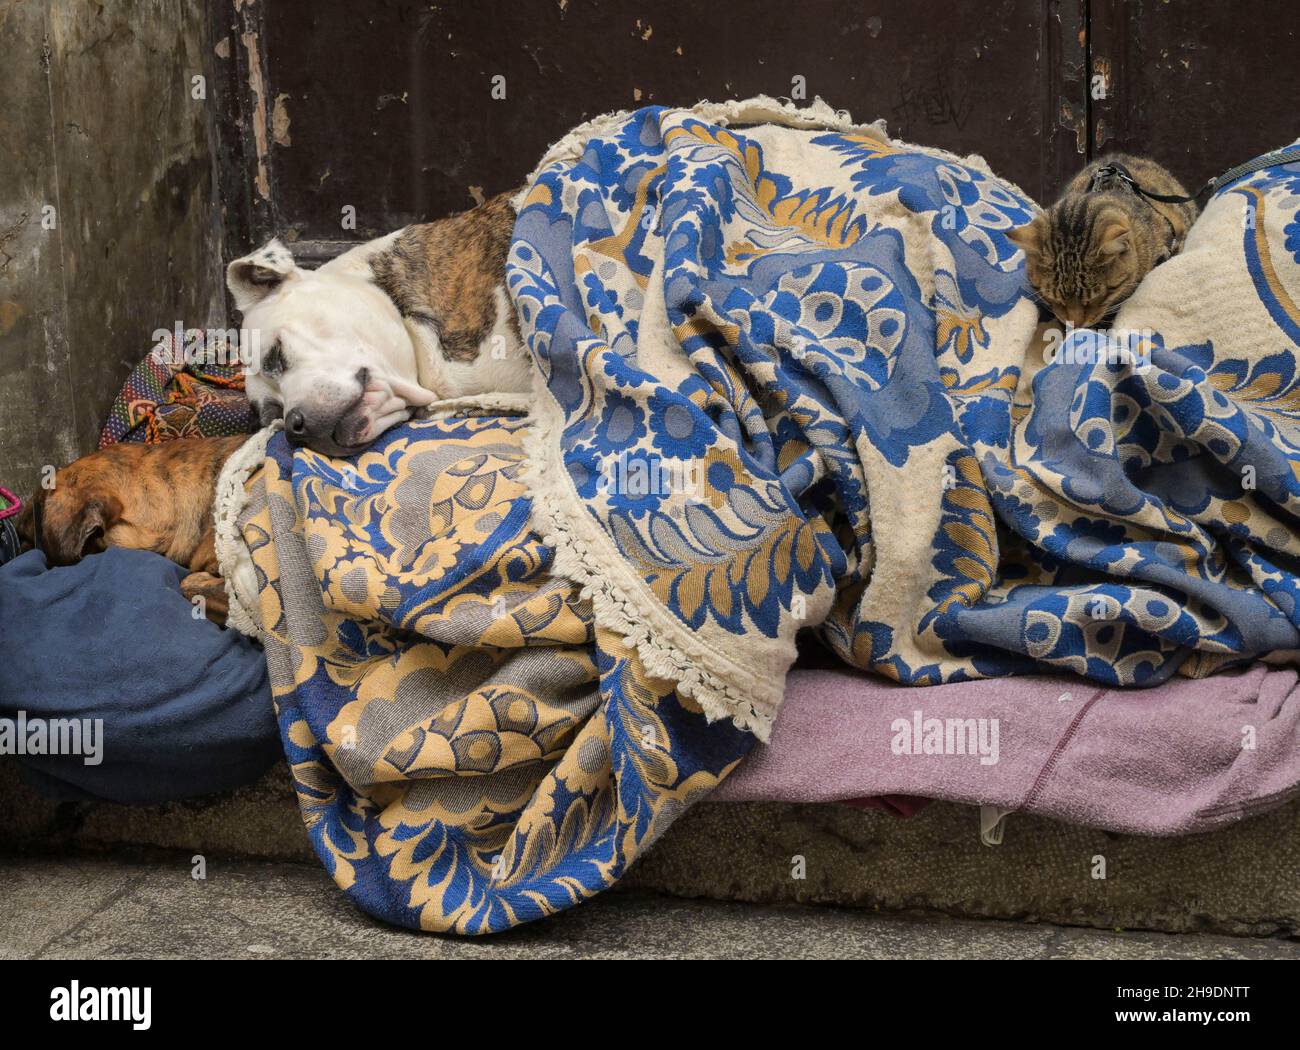 Katze und schlafende Hunde eines Obdachlosen, Palermo, Sizilien, Italien Foto Stock